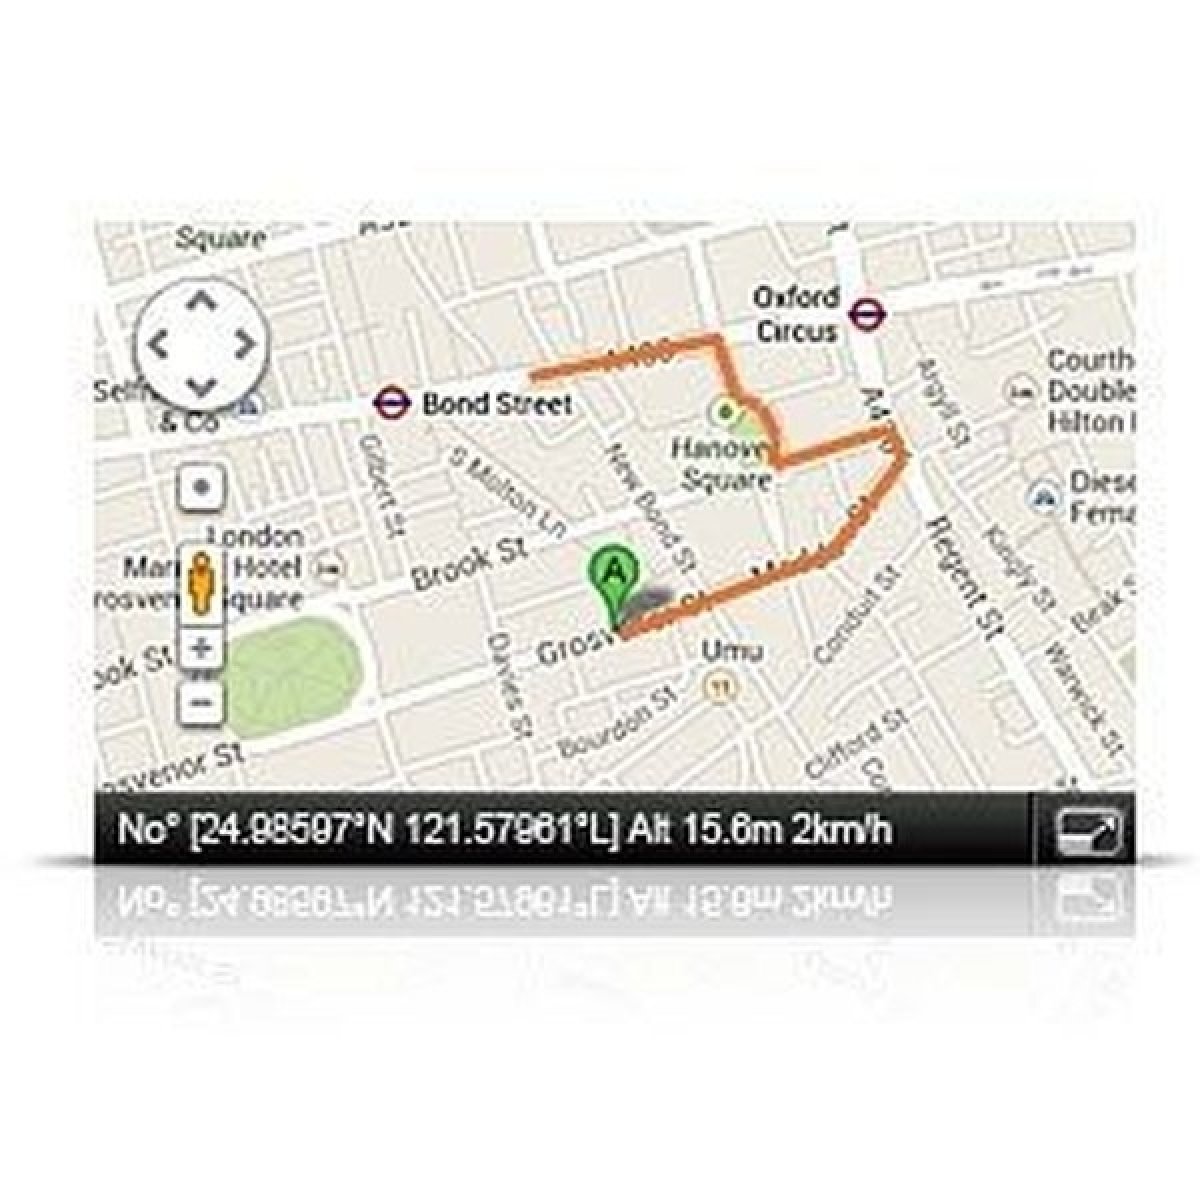 Spolehlivý svědek vašich cest s GPS lokátorem